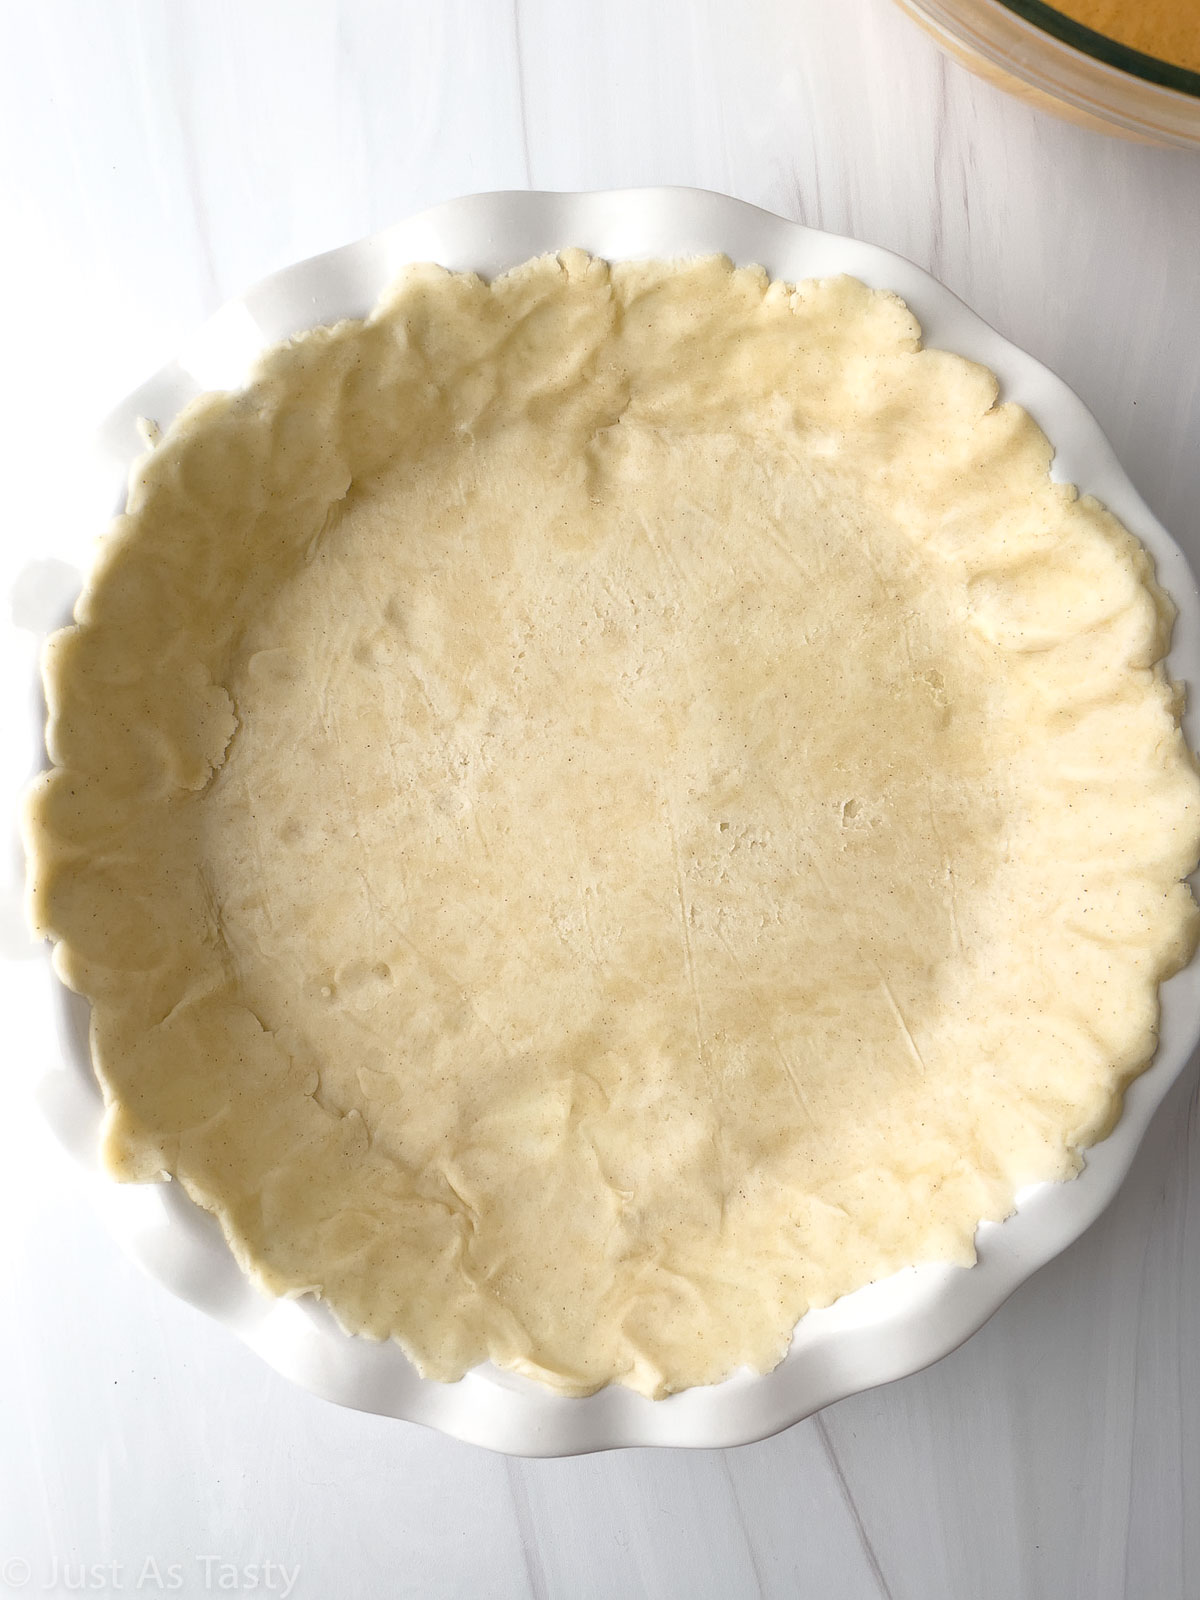 Pie crust dough in a pie plate. 